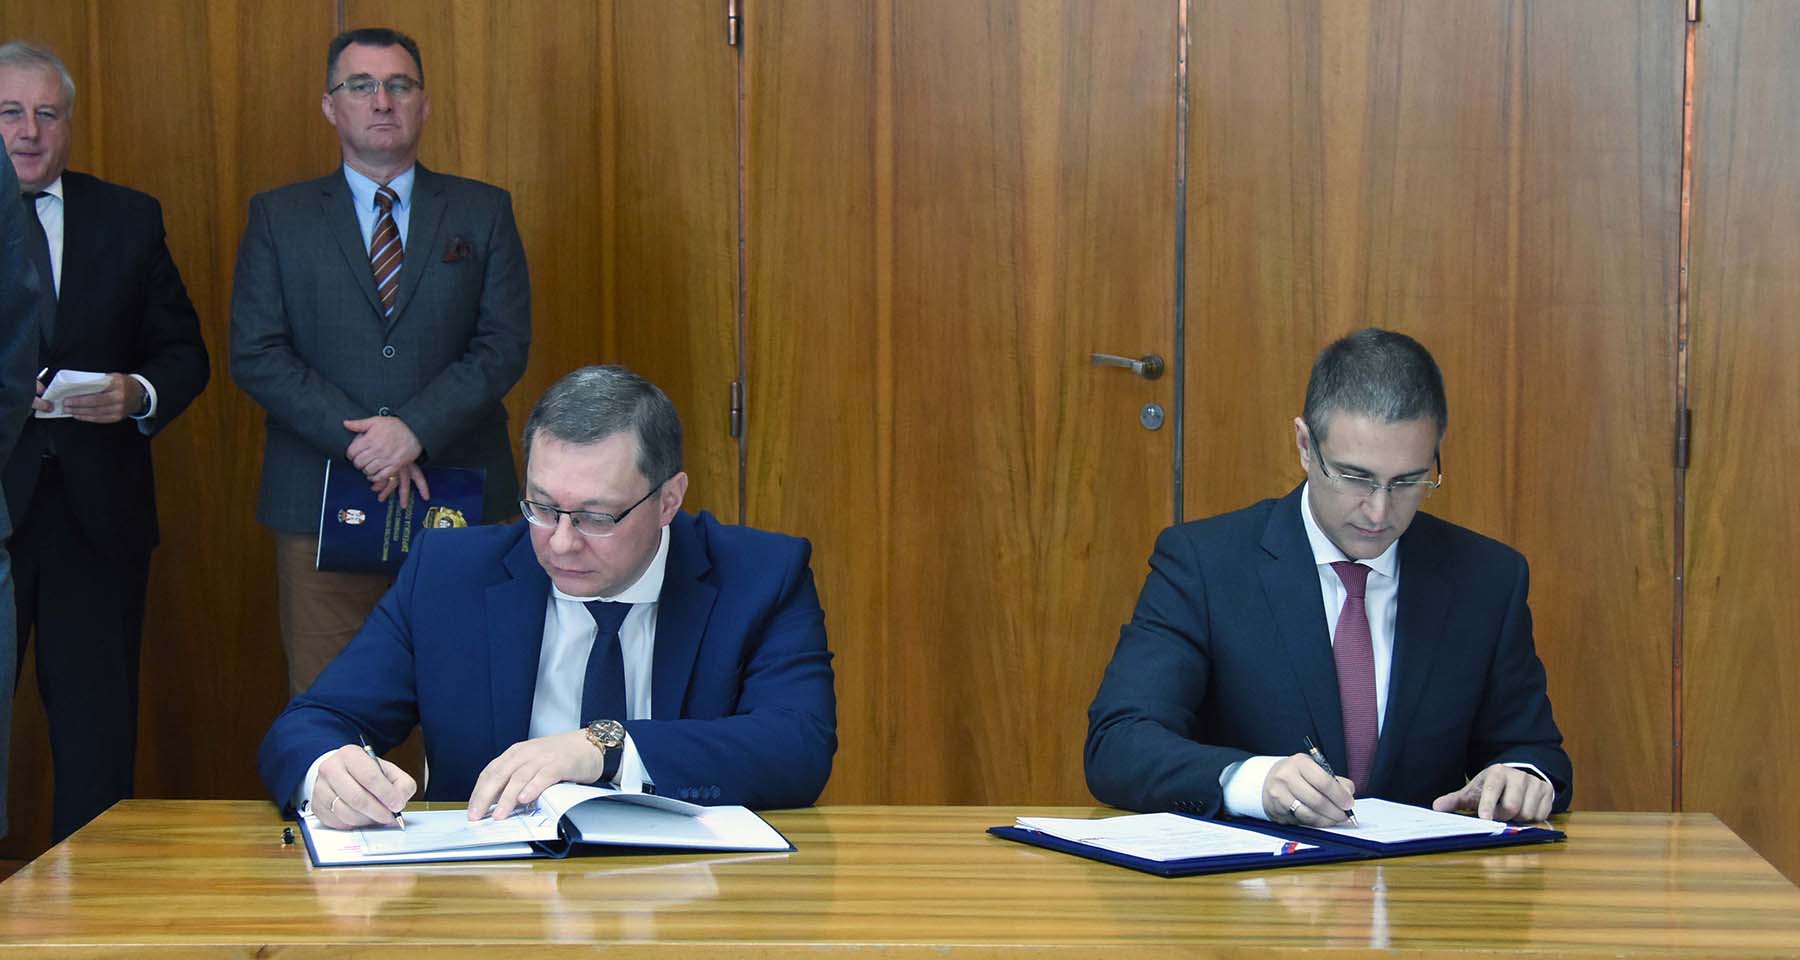 Sporazum o saradnji u oblasti forenzičke delatnosti između MUP-a Republike Srbije i Državnog komiteta za sudsko veštačenje Belorusije